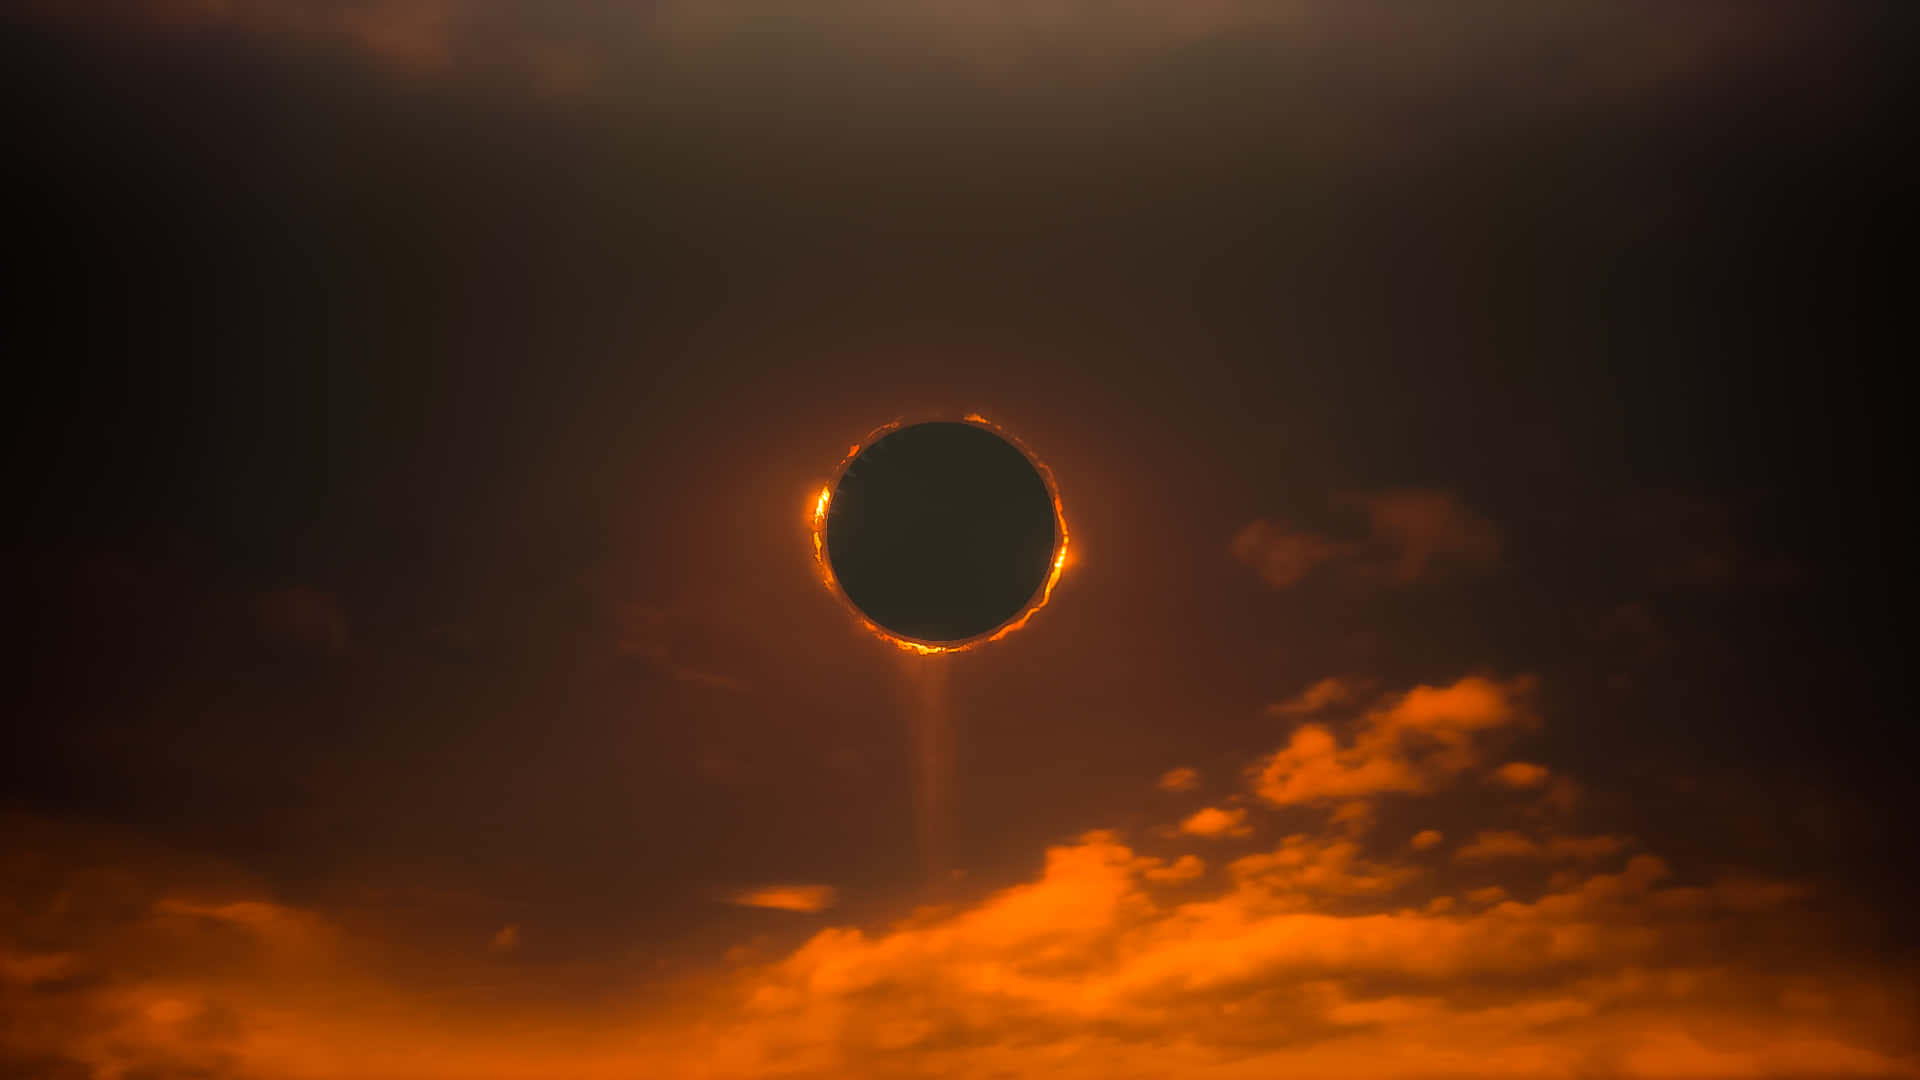 Dark Depressing Solar Eclipse Background